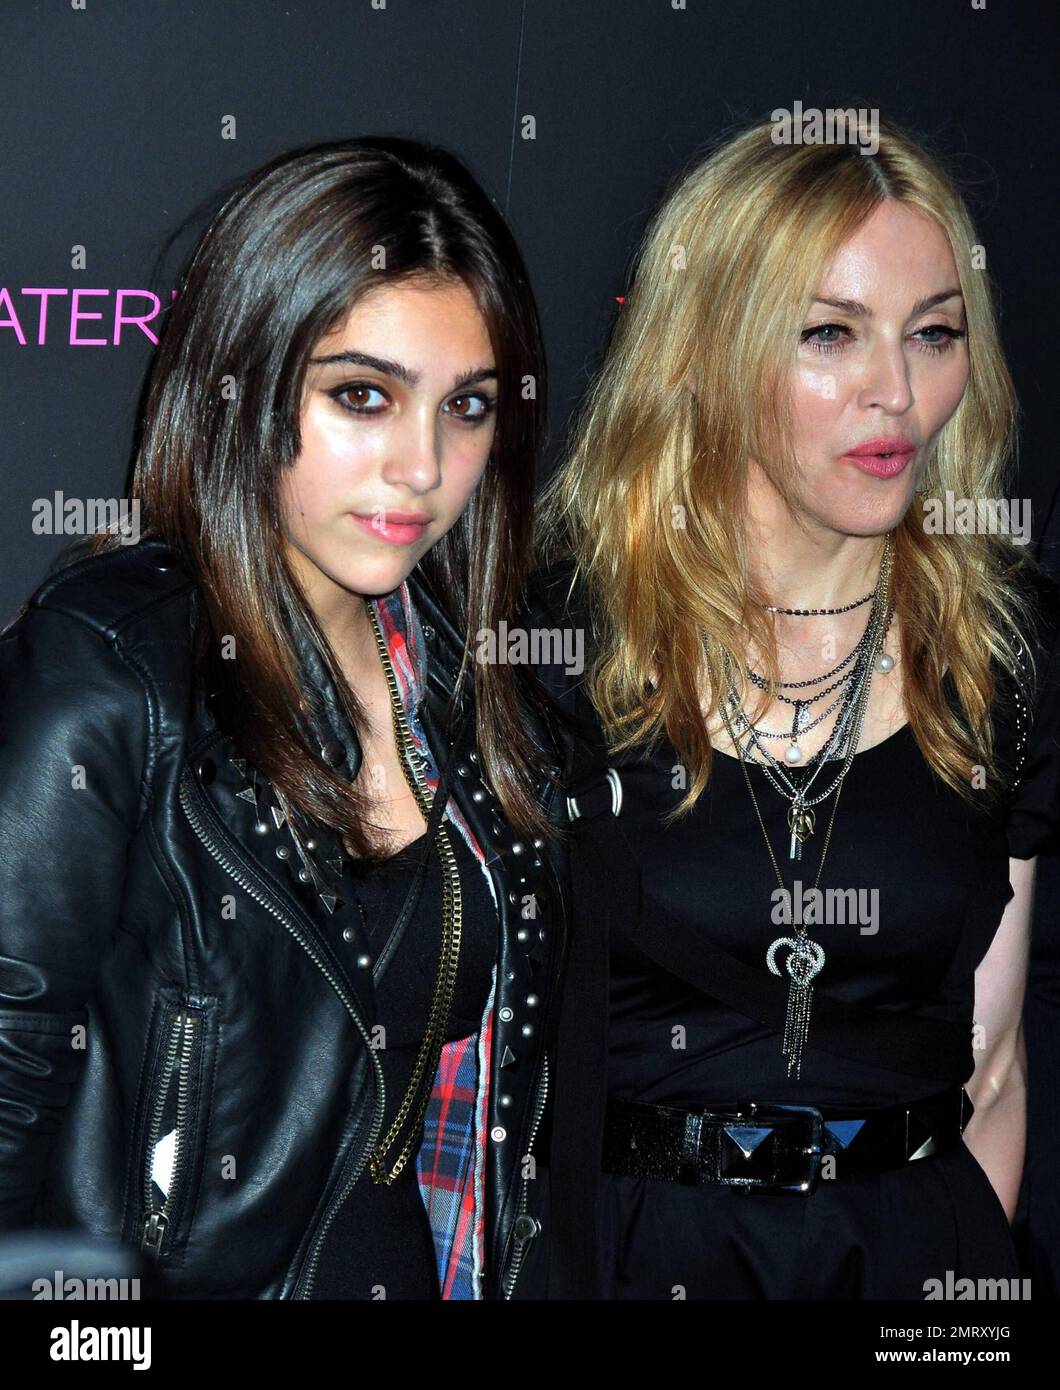 Madonna e figlia Lourdes camminano il tappeto rosa al lancio della  collezione della loro nuova linea di moda, Material Girl a Macy's Herald  Square. Il duo madre-figlia è stato accompagnato anche dal